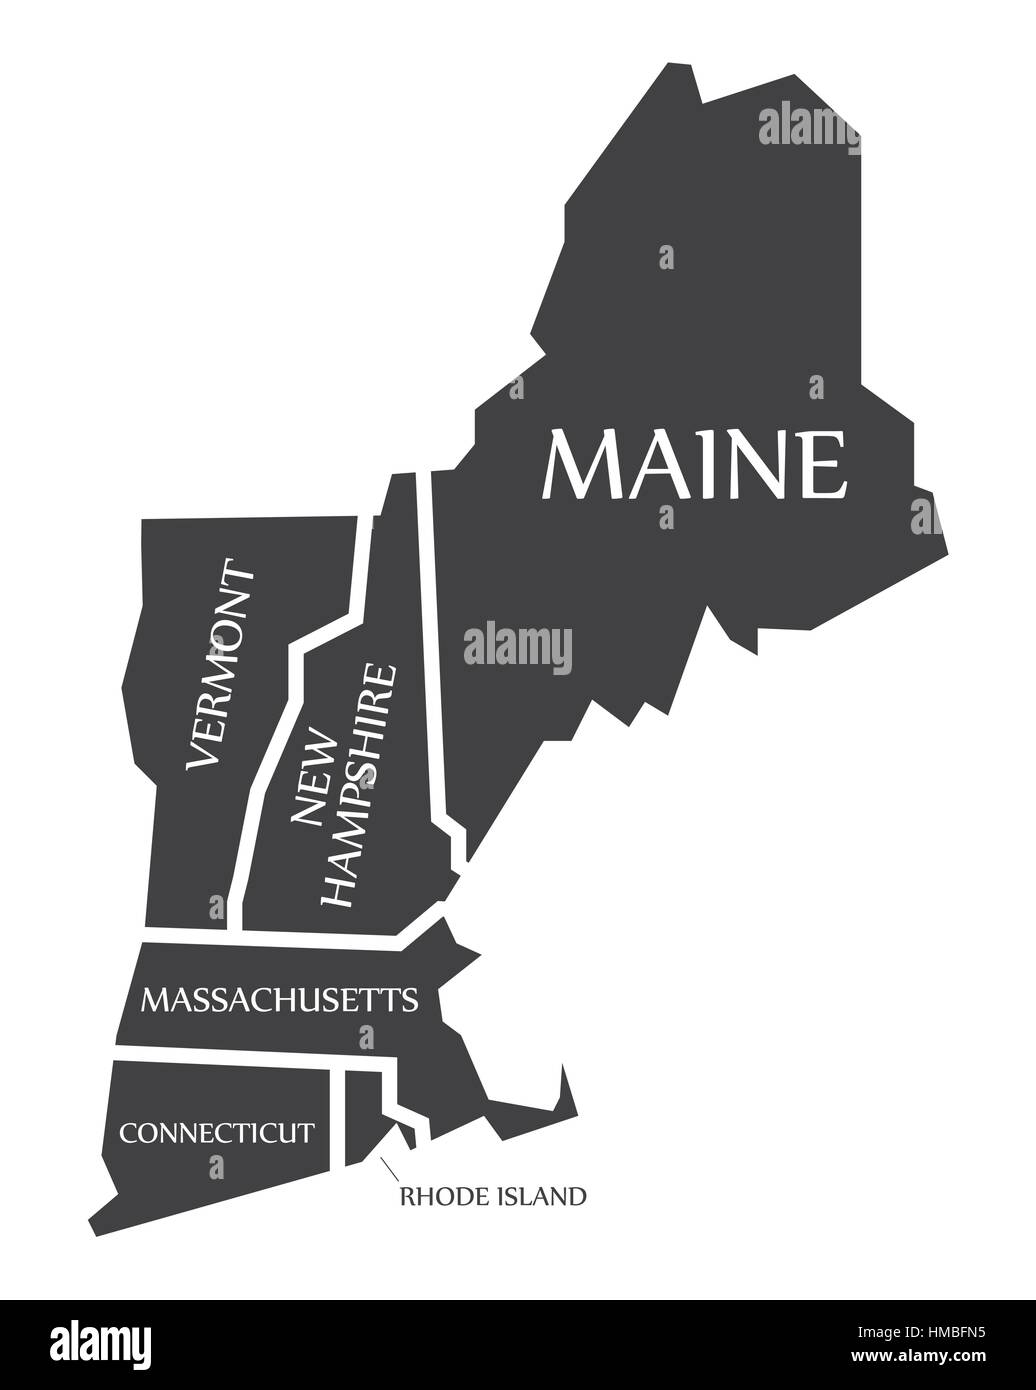 Maine - New Hampshire - Rhode Island - Massachusetts site étiqueté illustration noir Illustration de Vecteur